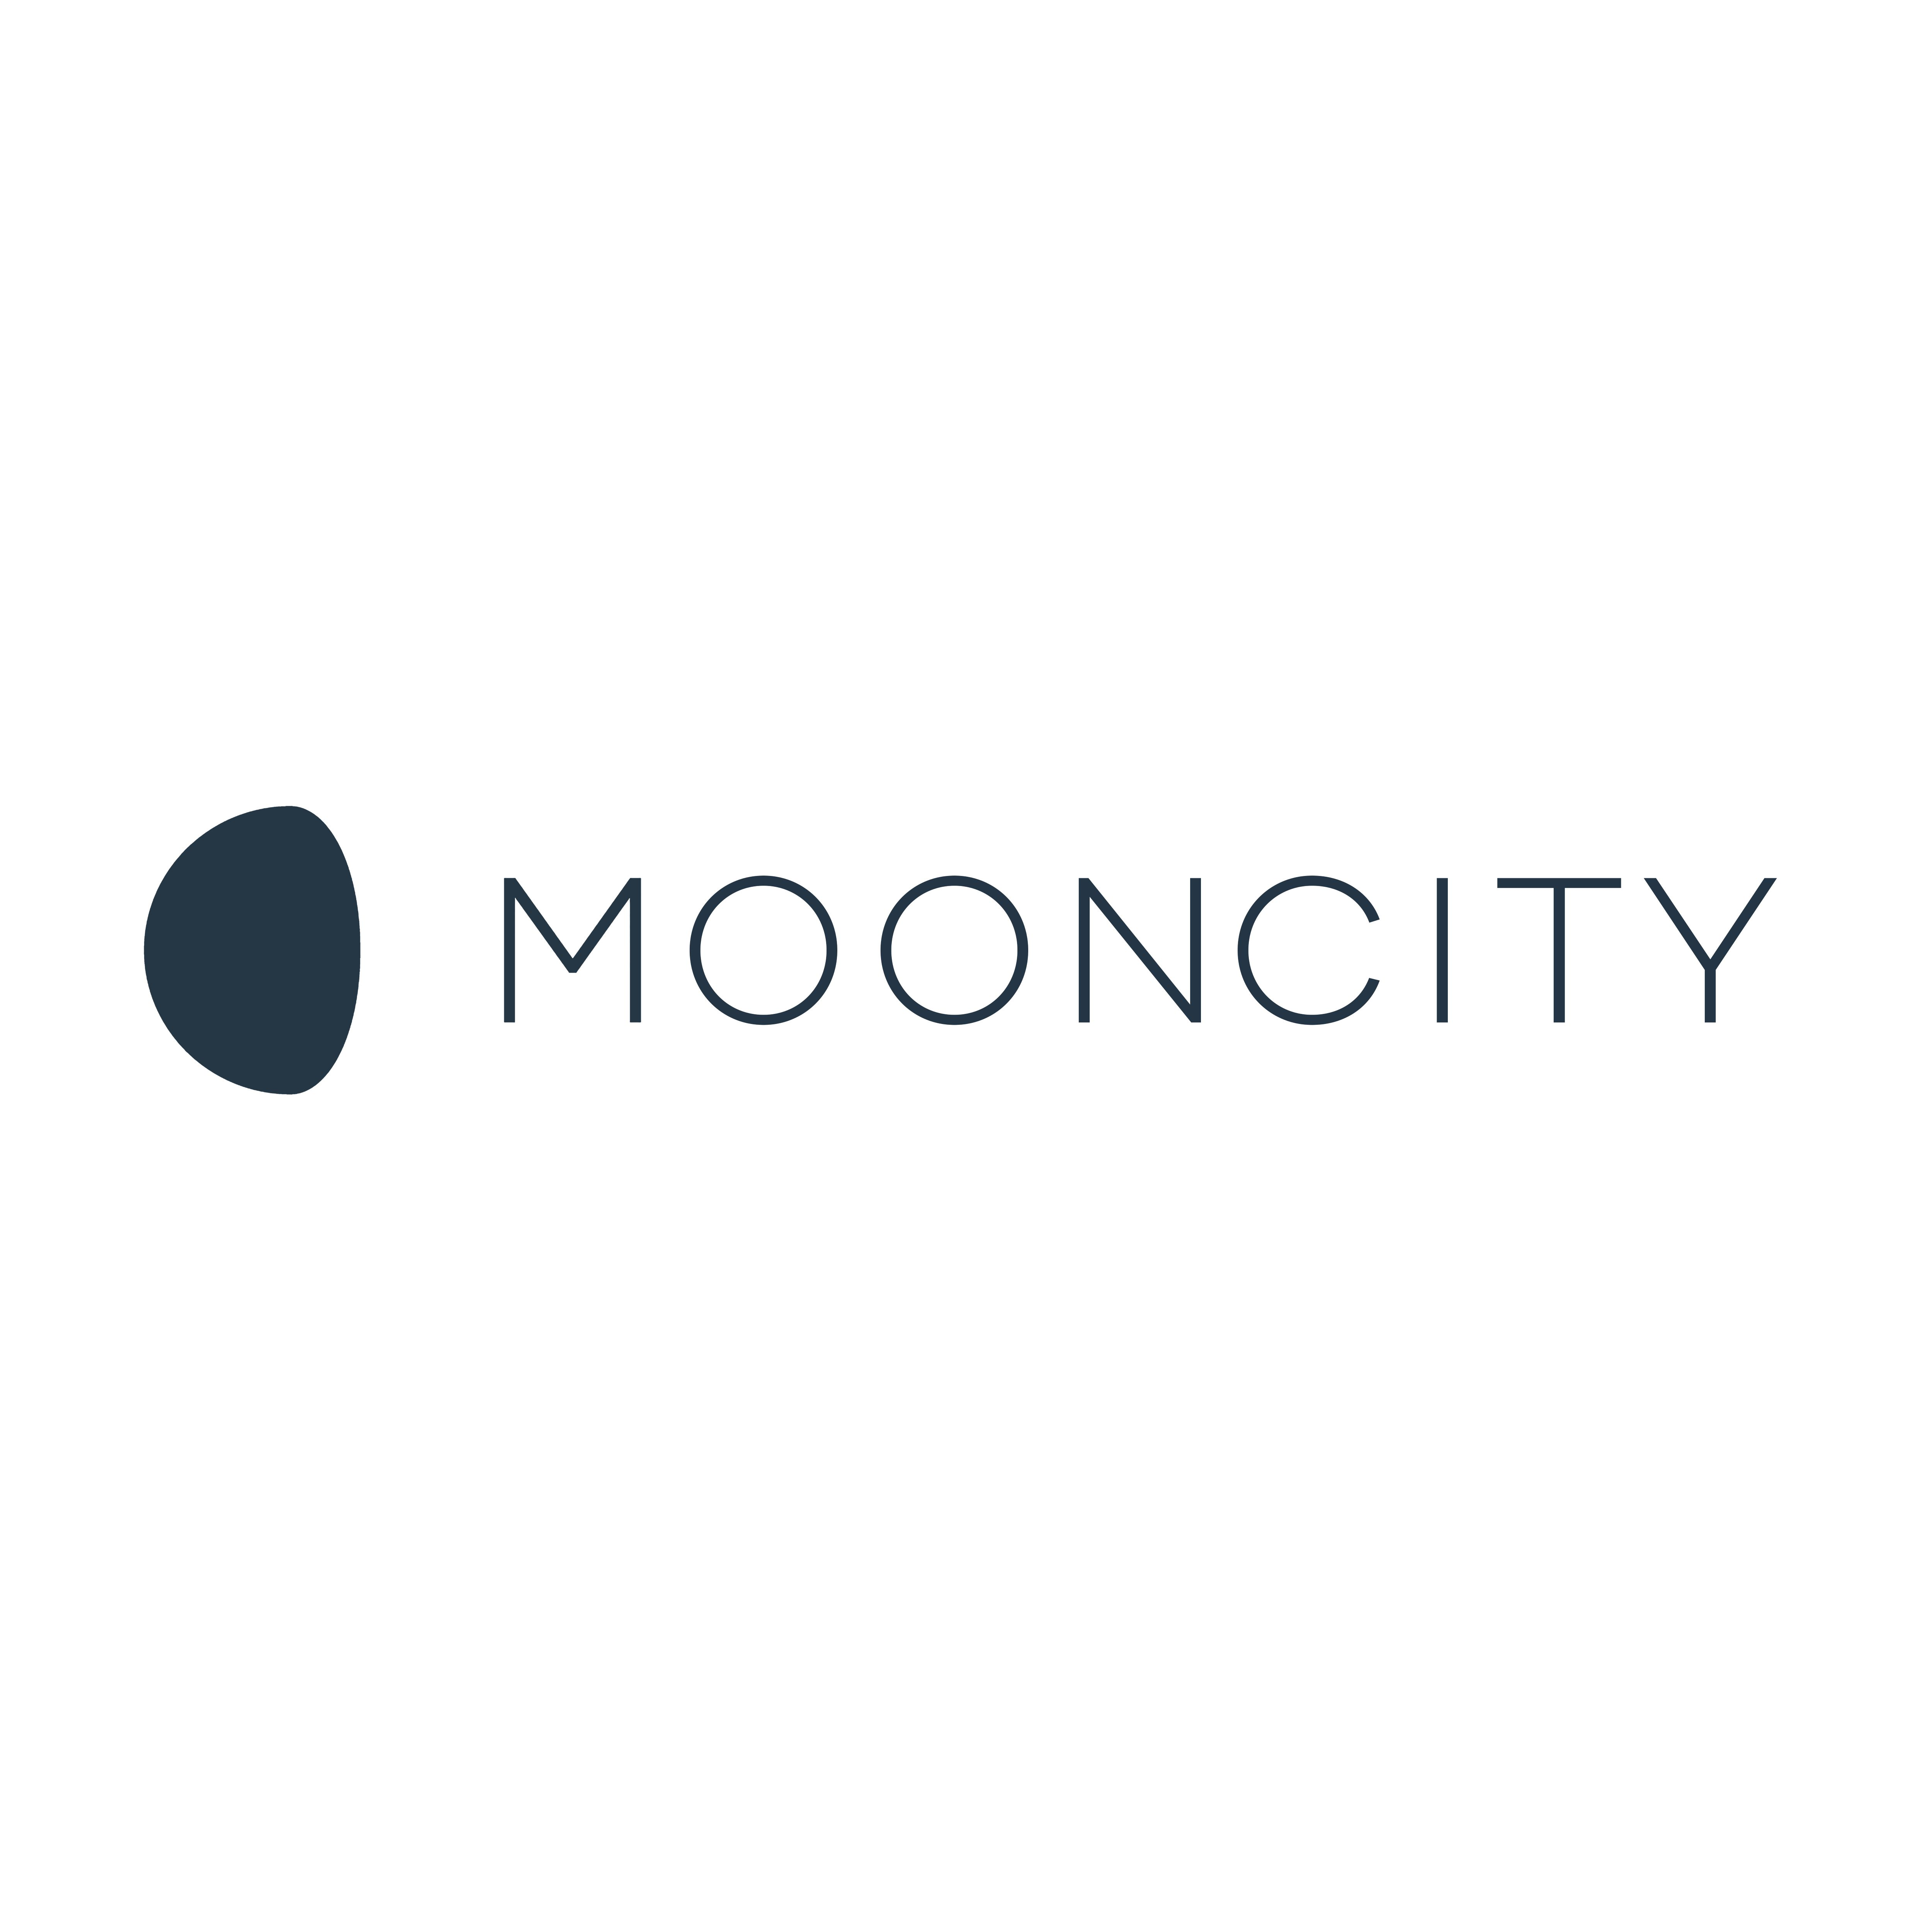 Mooncity